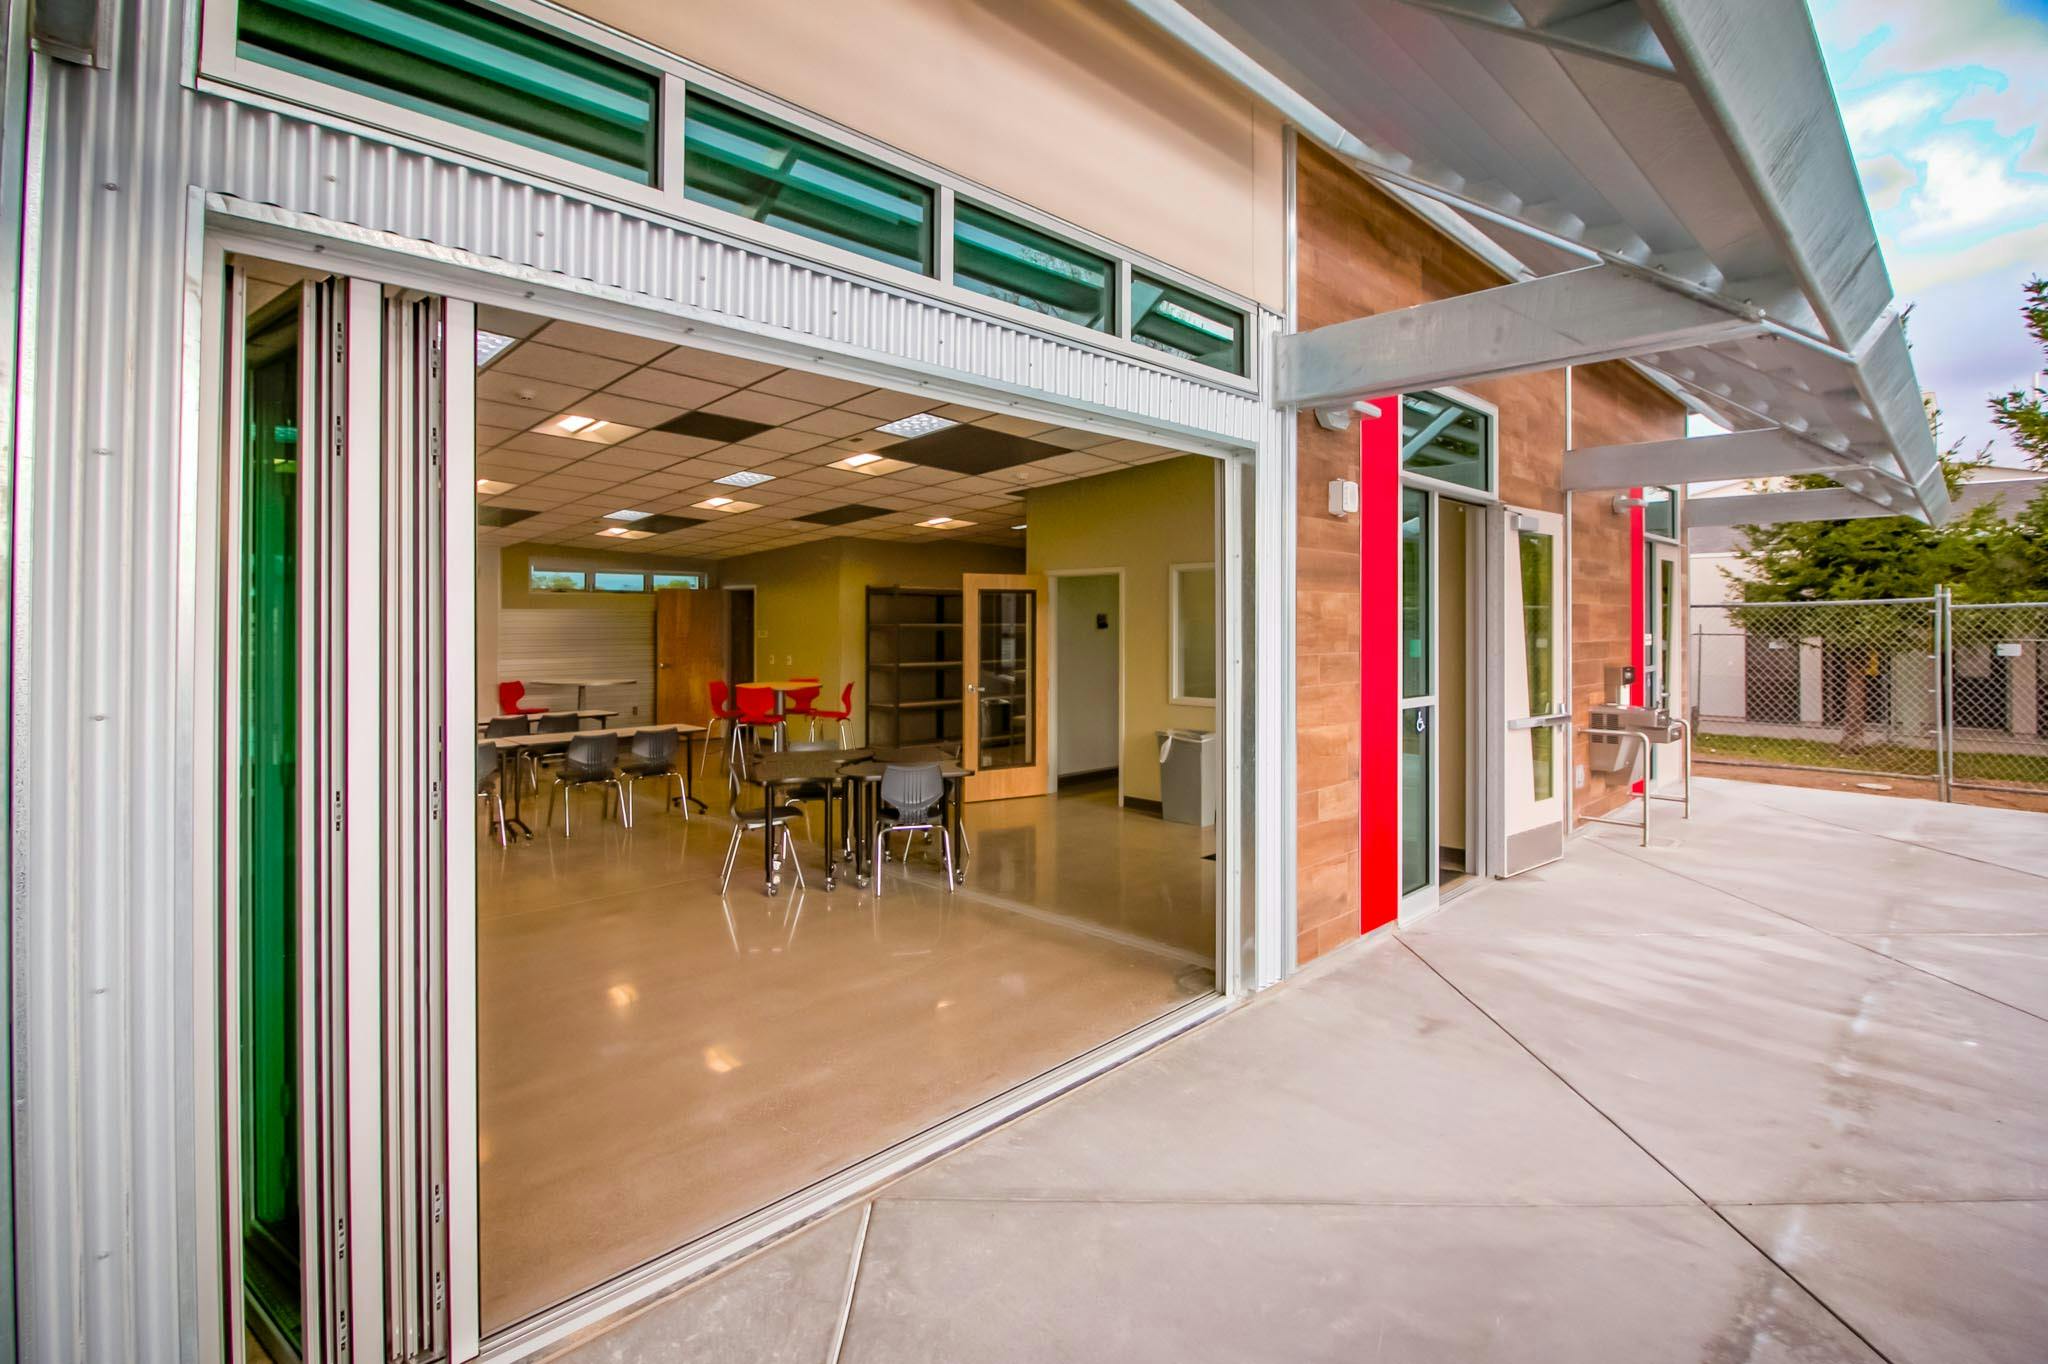 STEM classroom design exterior and interior glass walls